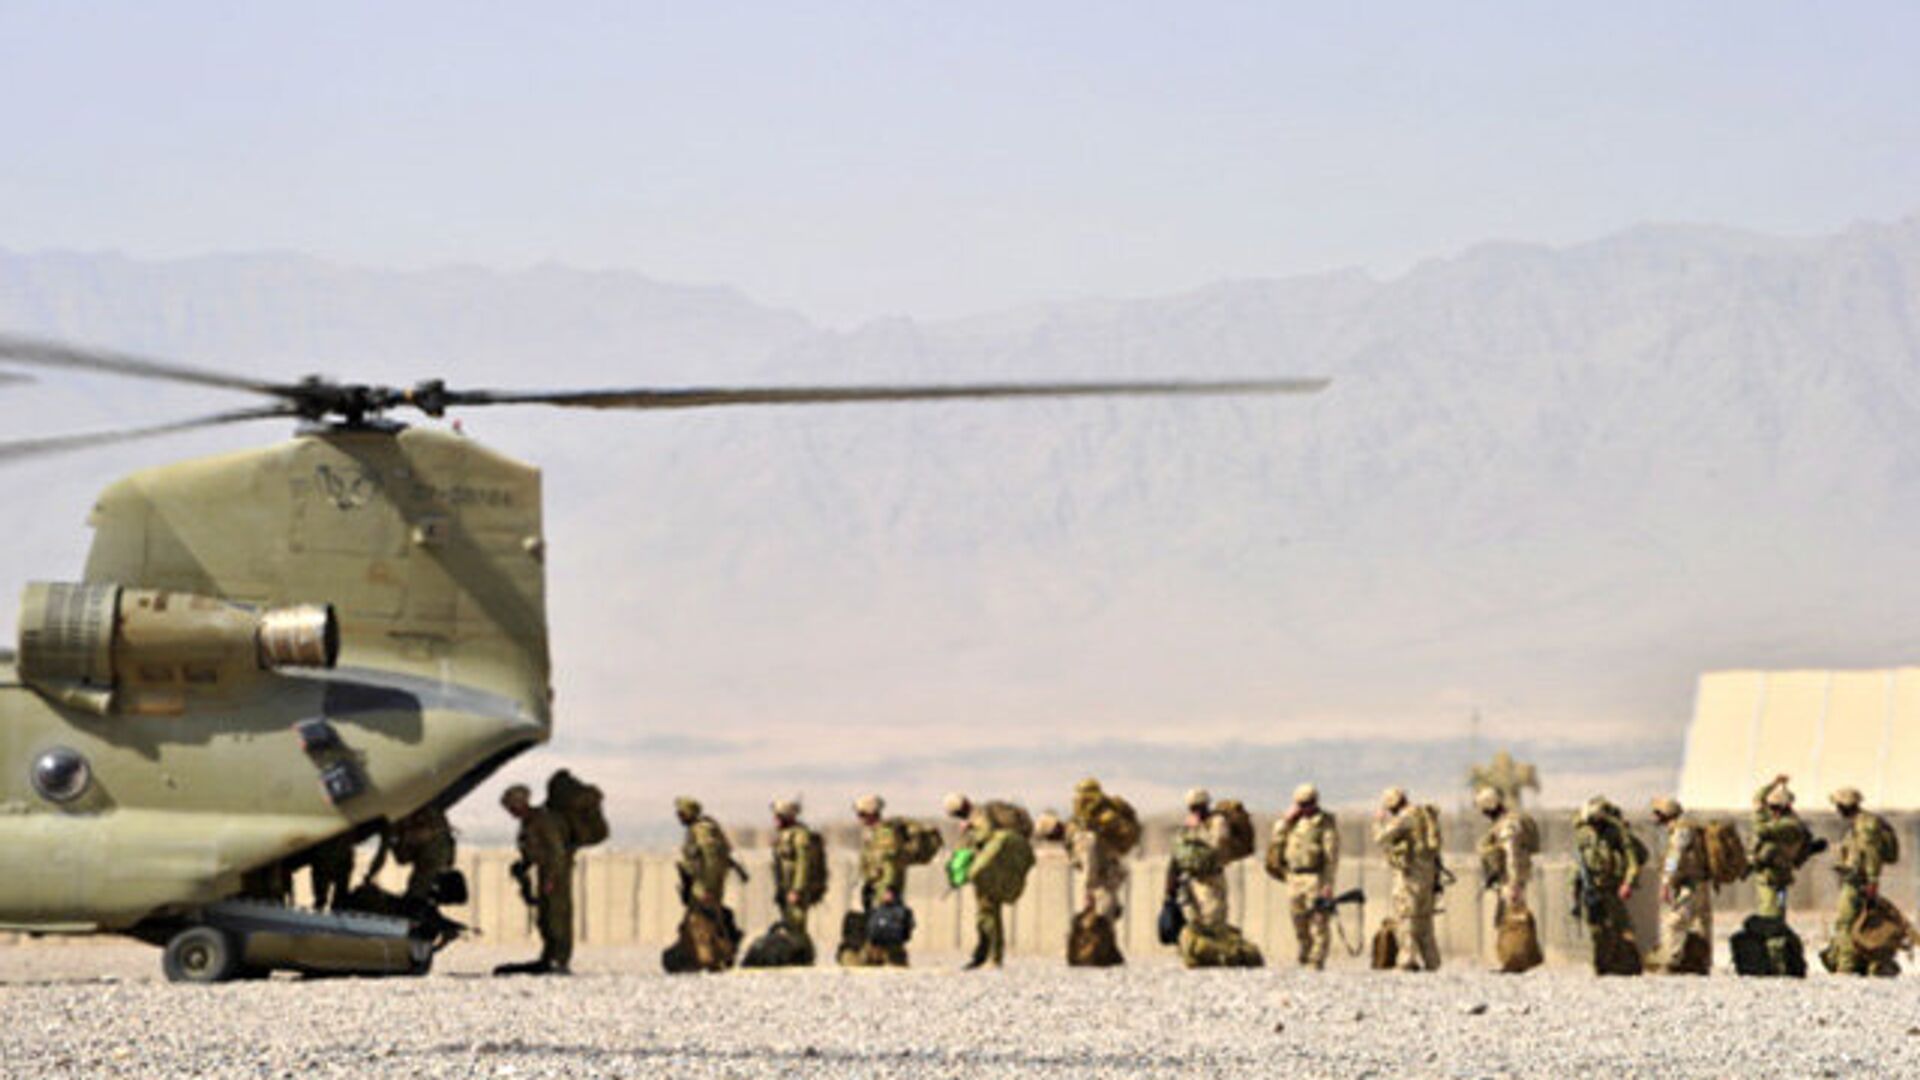 Солдаты Австралийской армии загружаются в вертолет Chinook, чтобы вылететь на патрульные базы в провинции Урузган на юге Афганистана - РИА Новости, 1920, 23.11.2020